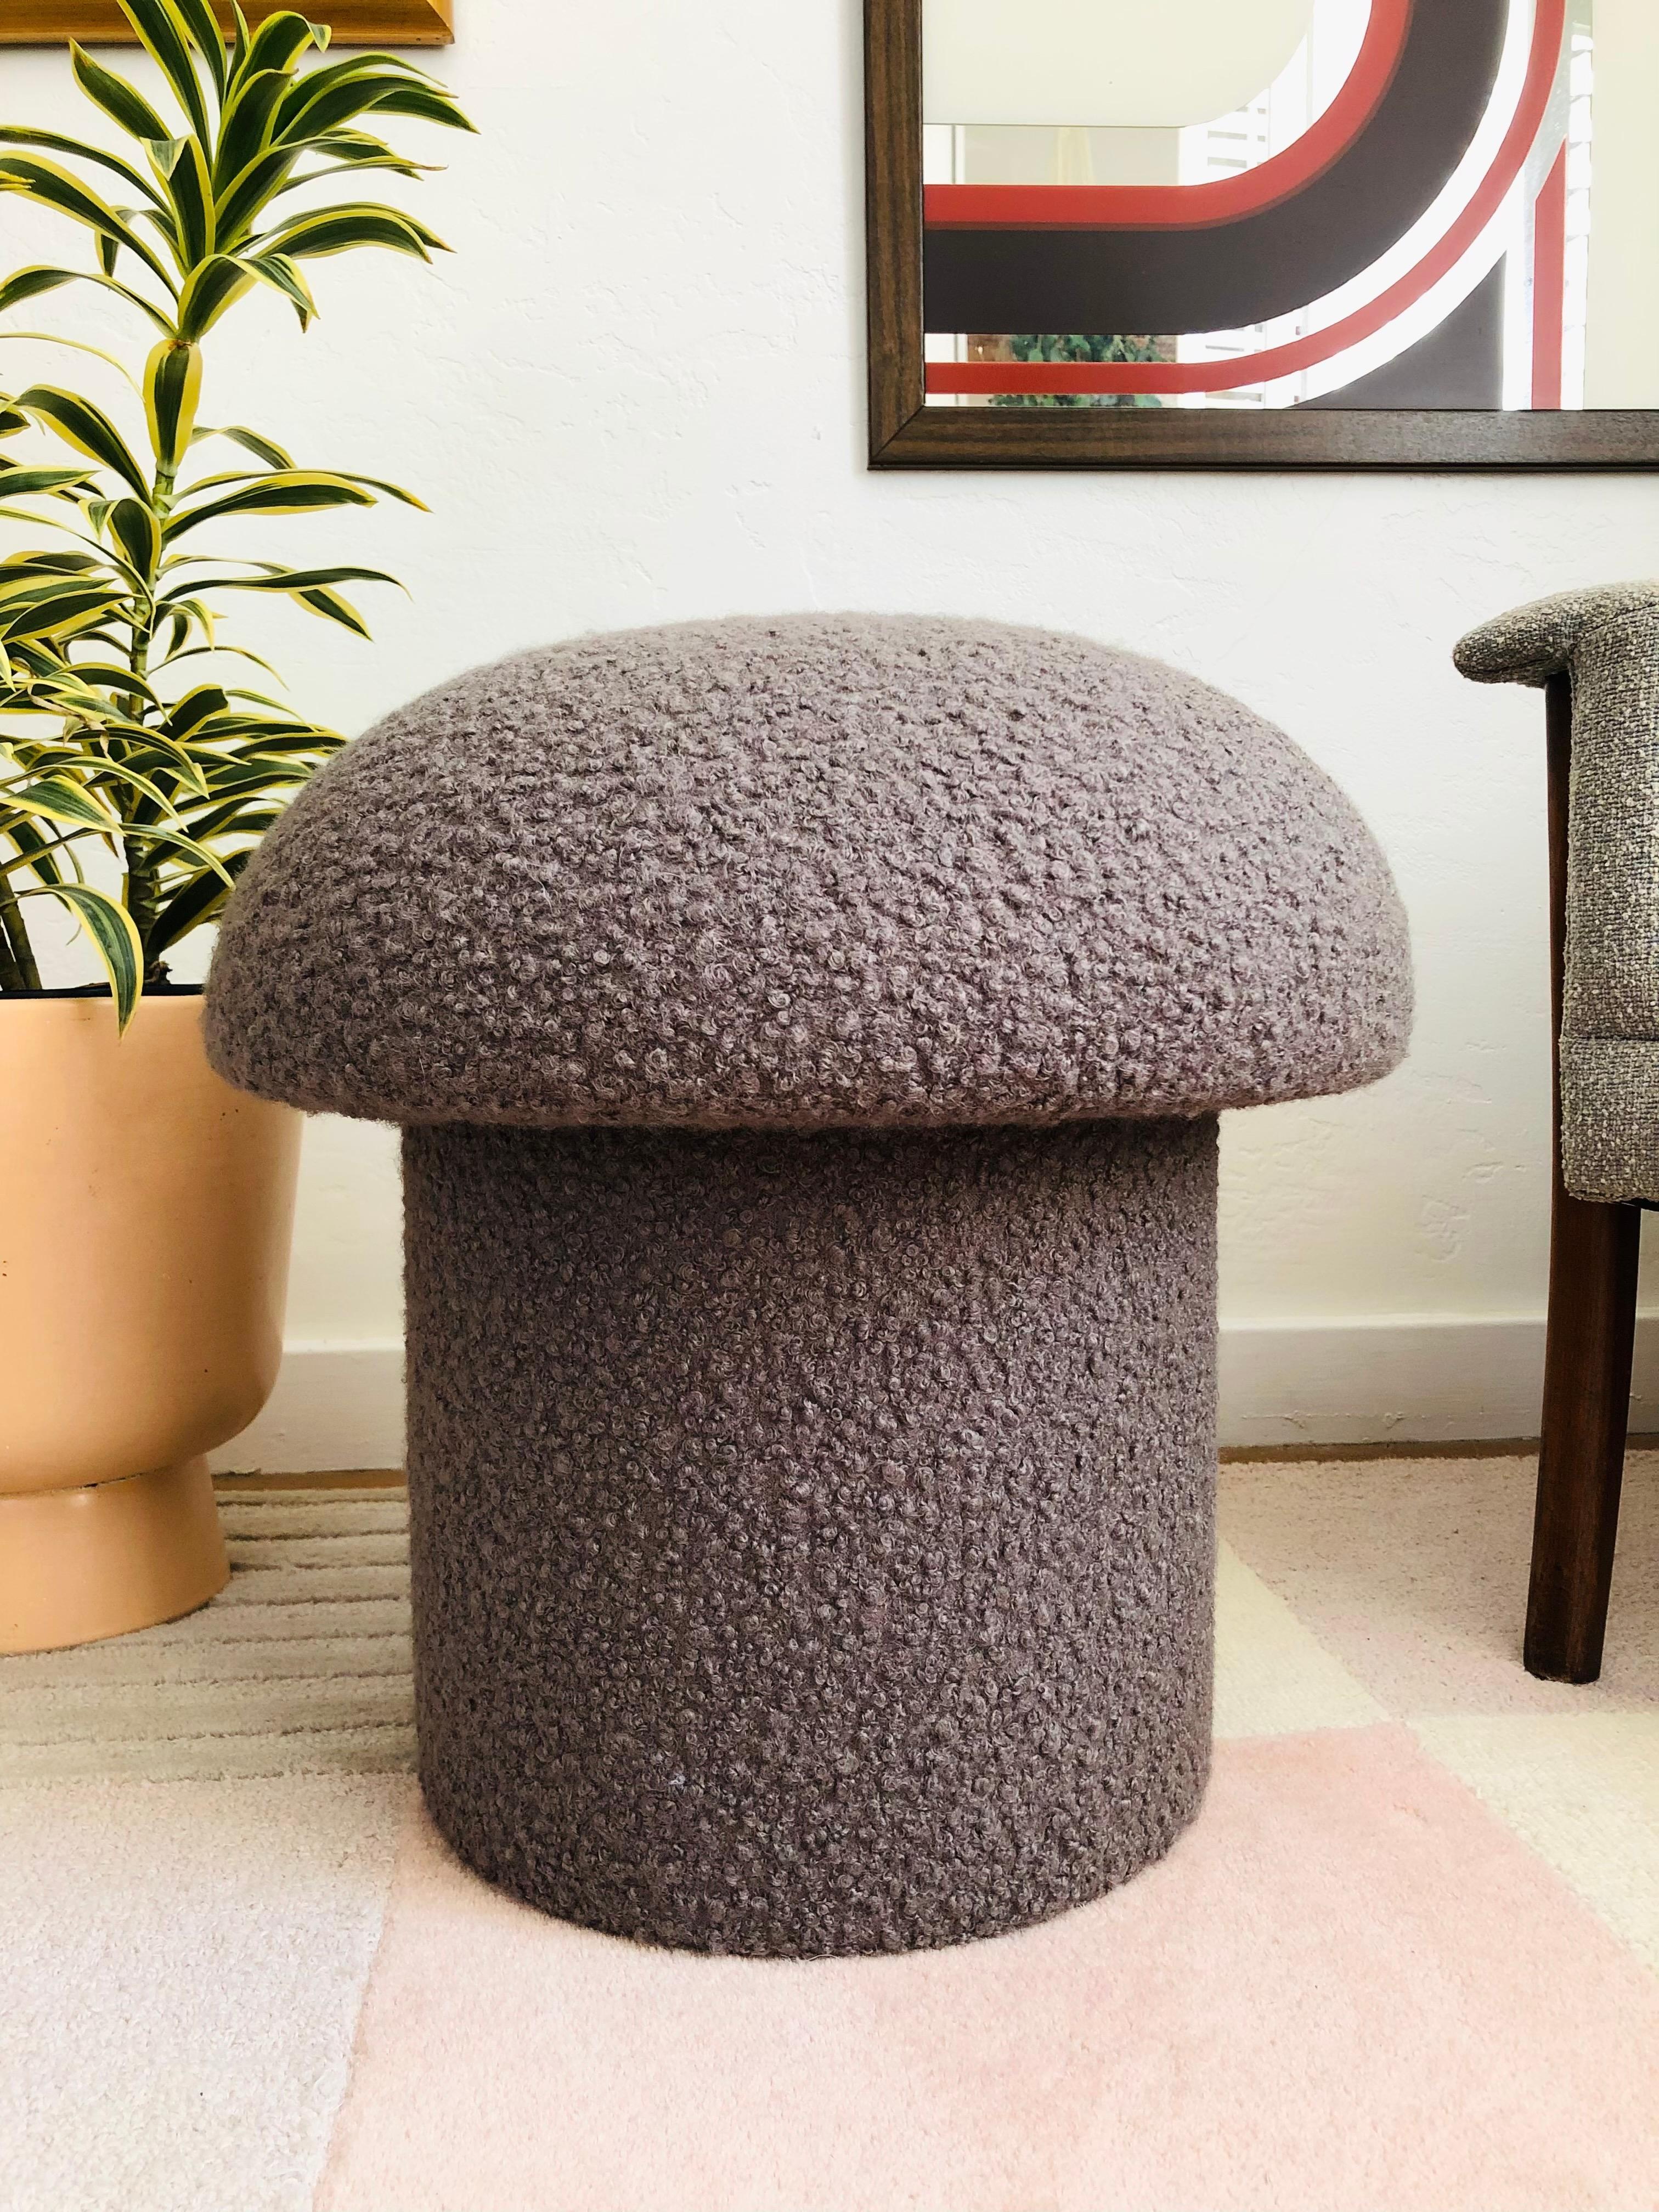 mushroom shaped footstool